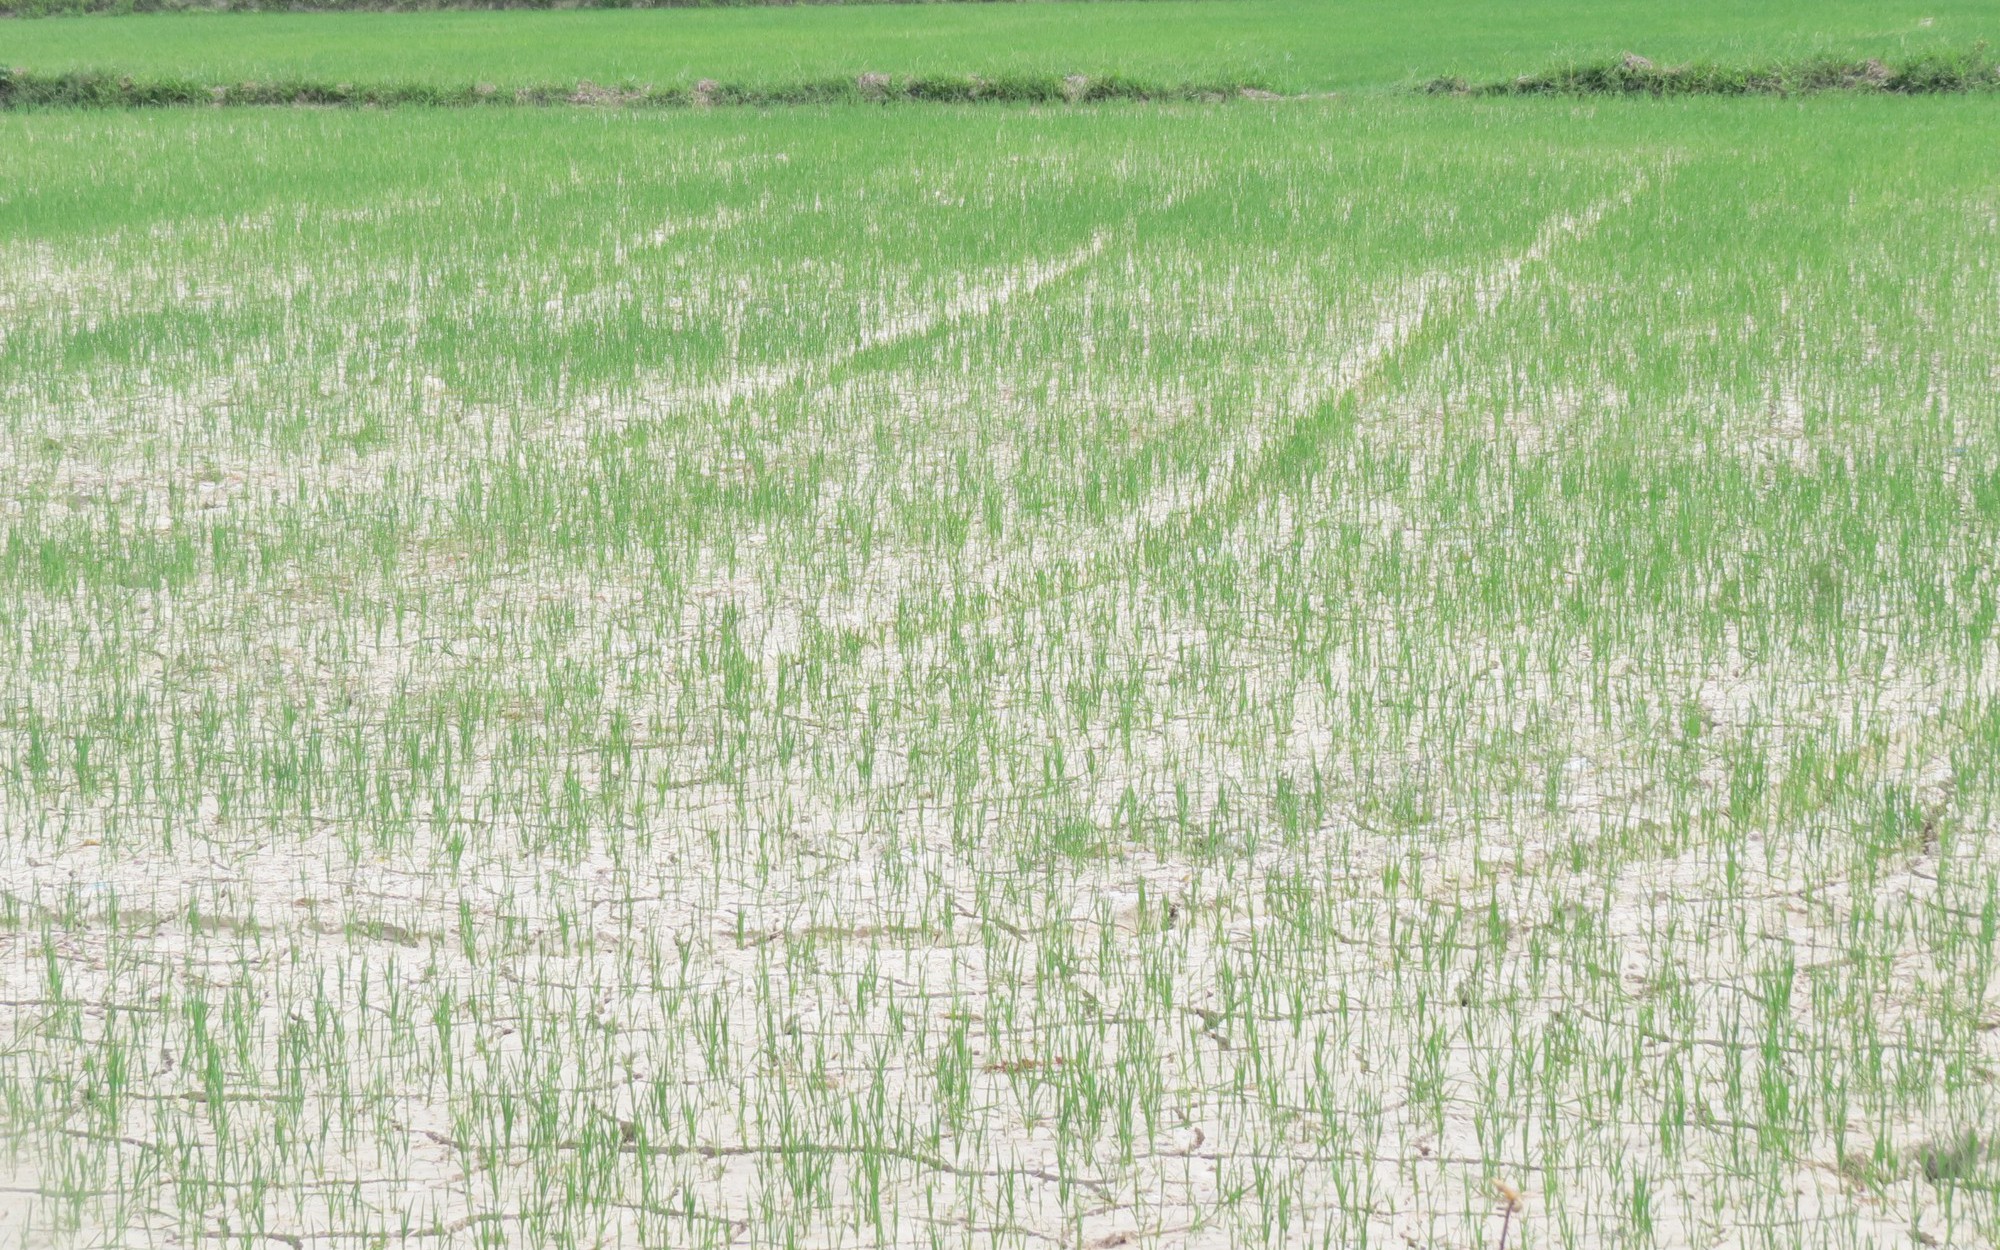 Nông dân mòn mỏi chờ nước để cứu ruộng lúa khát khô